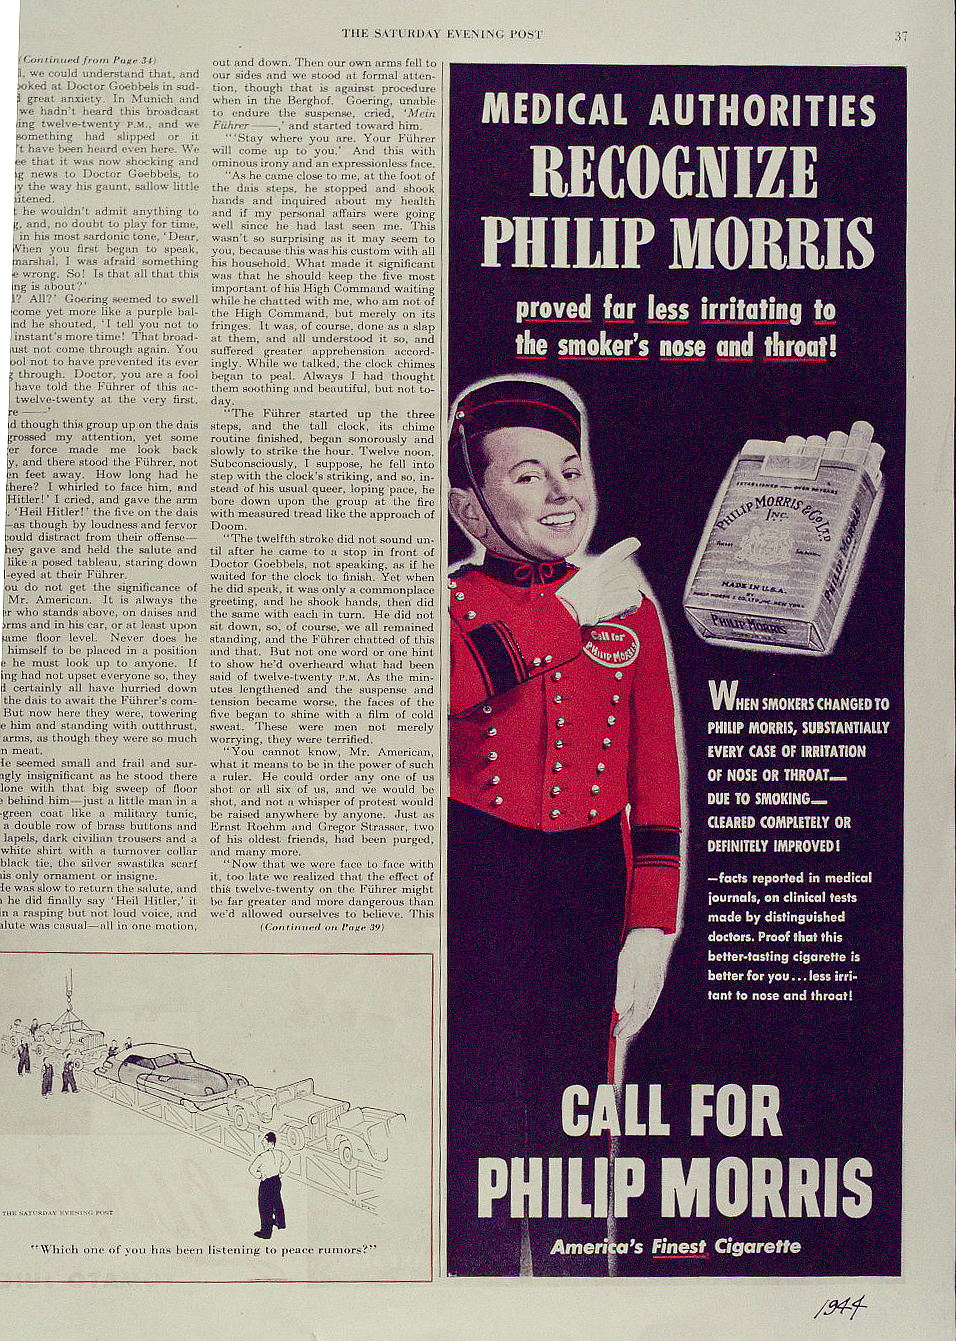 Medical authorities recognize Philip Morris. Call for Philip Morris